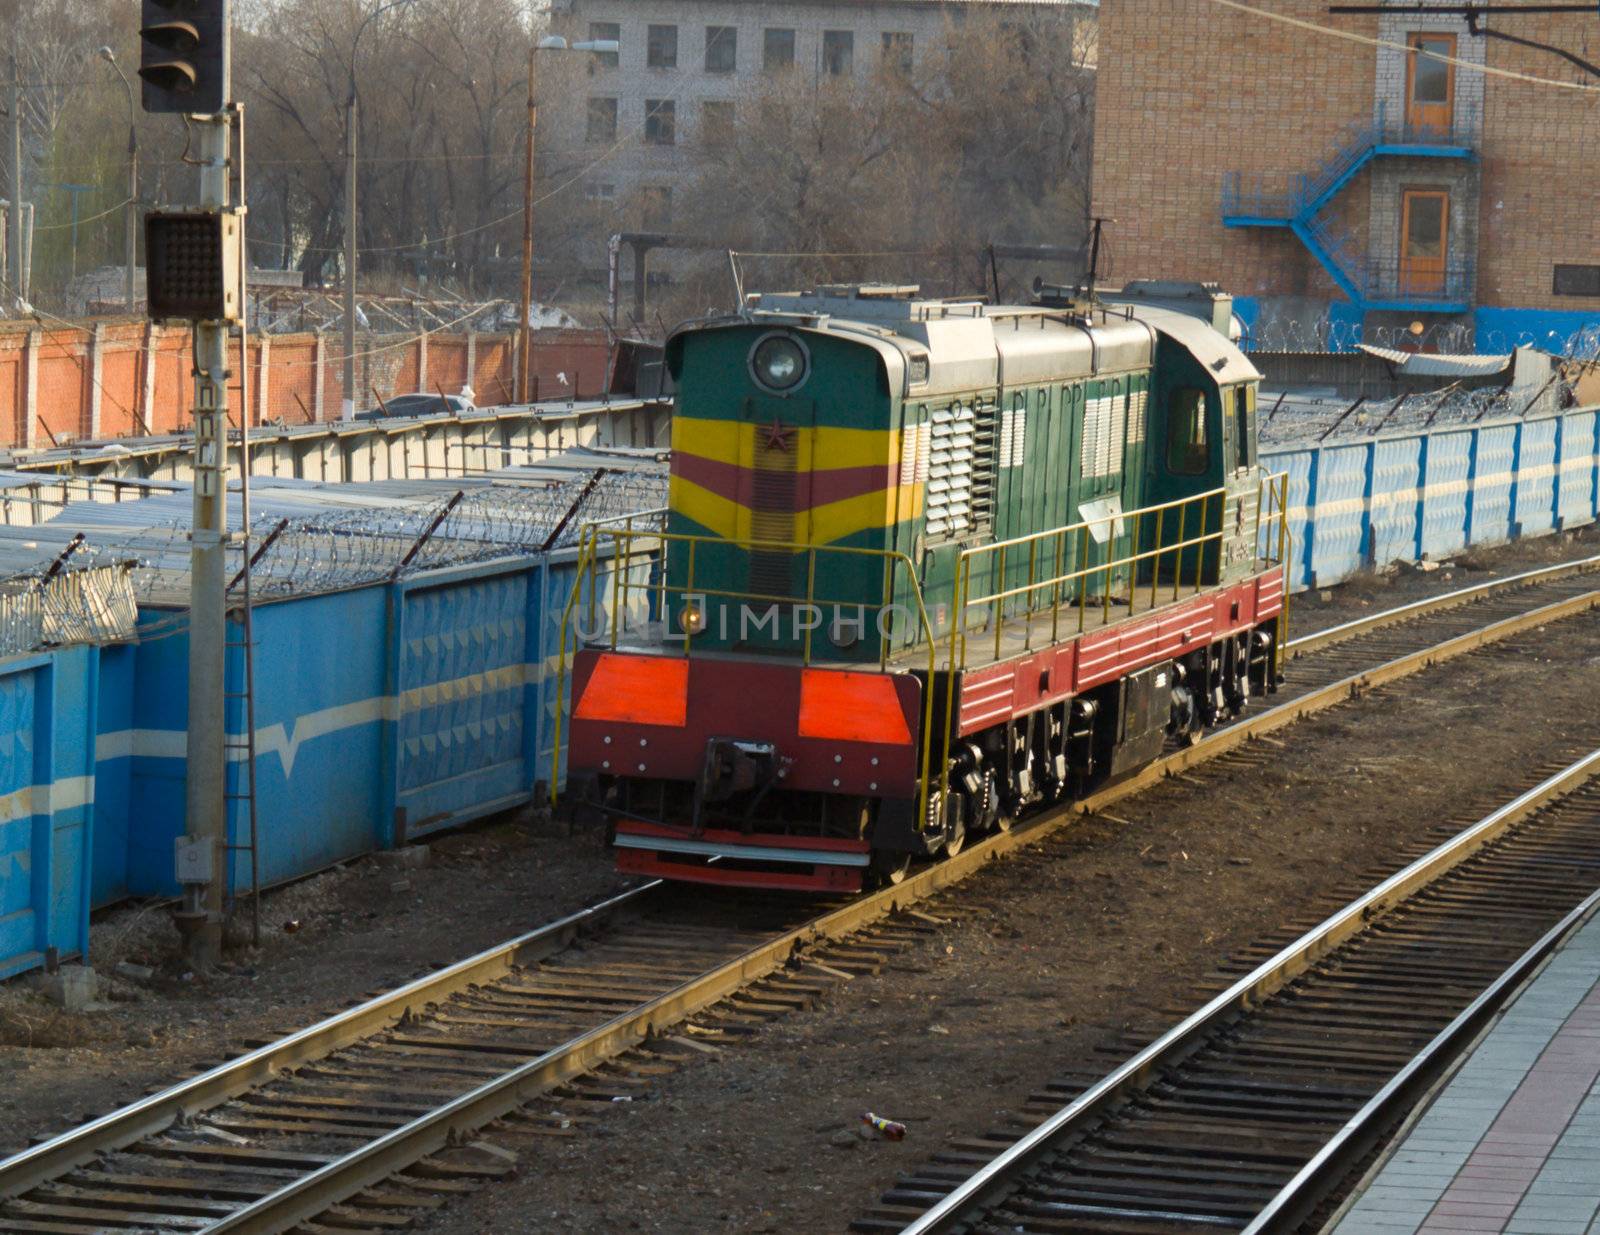 Moving diesel locomotive by Kriblikrabli